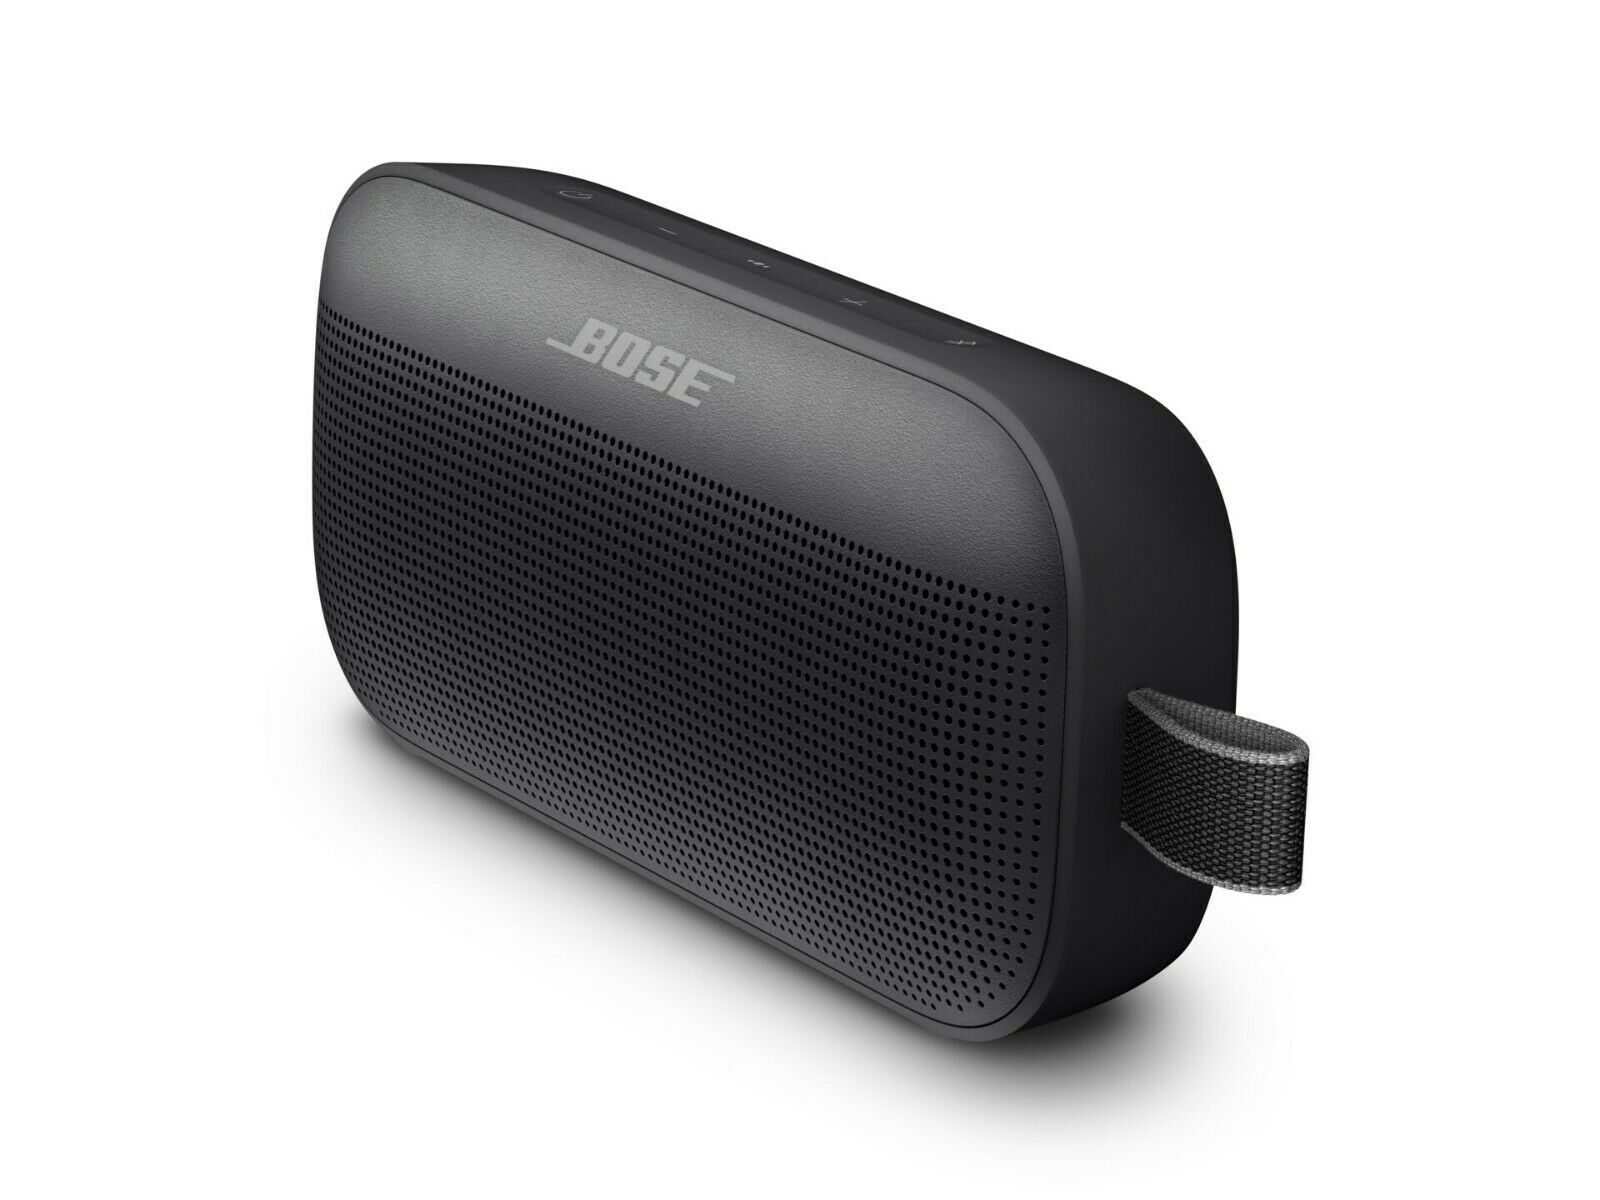 Alto-falante à prova d'água Bluetooth Bose SoundLink Flex externo, novo em folha e lacrado 